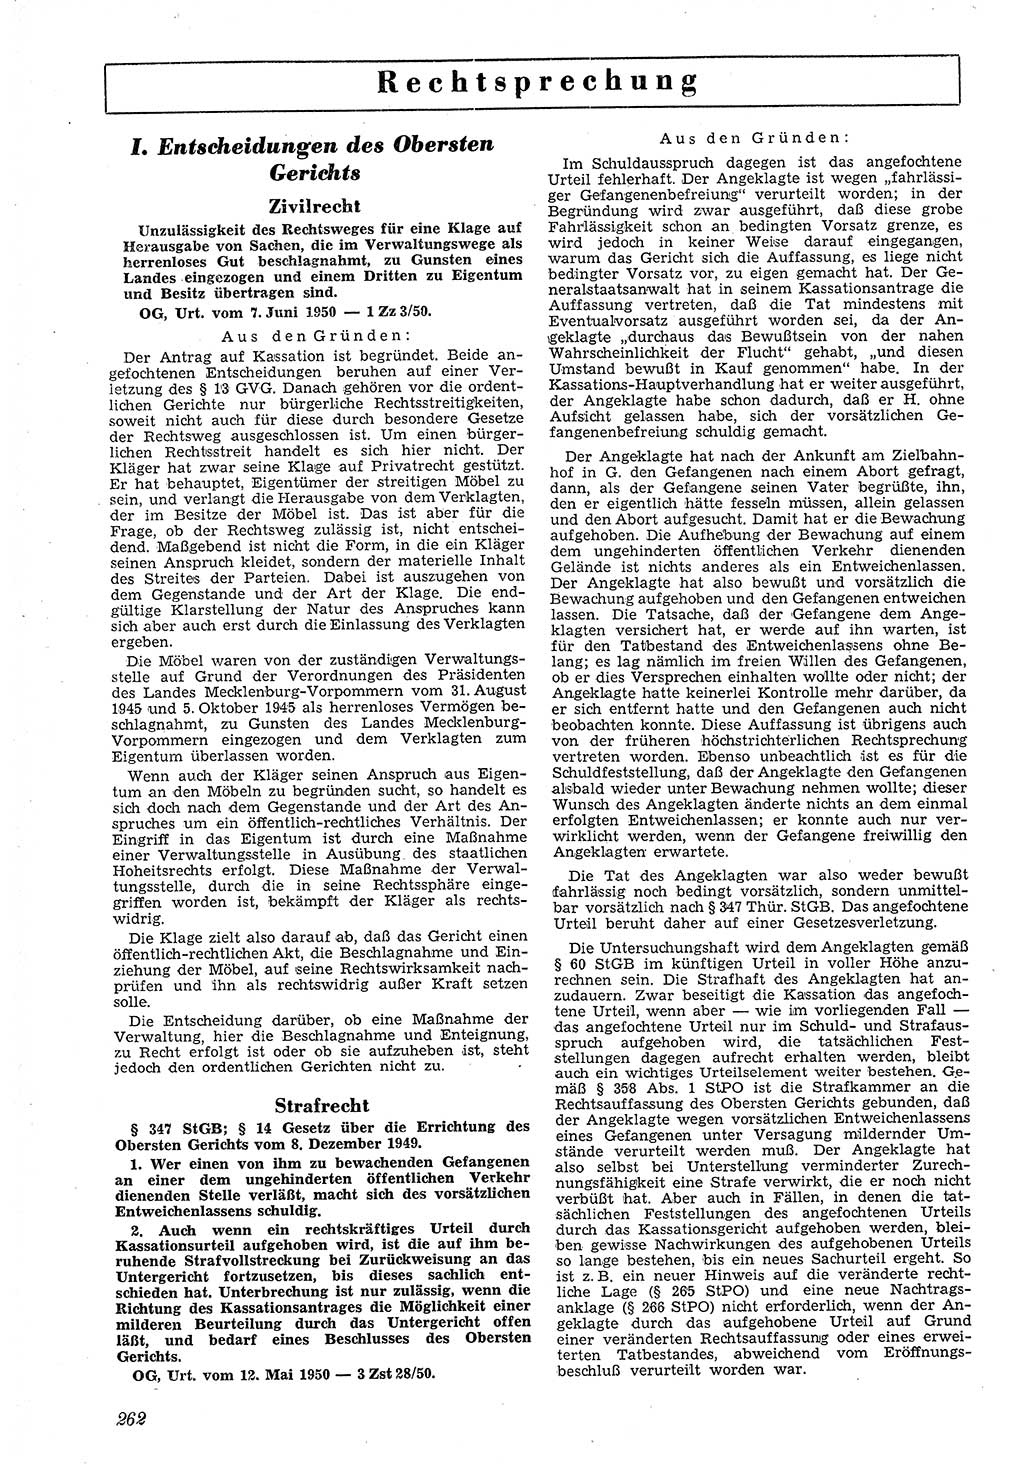 Neue Justiz (NJ), Zeitschrift für Recht und Rechtswissenschaft [Deutsche Demokratische Republik (DDR)], 4. Jahrgang 1950, Seite 262 (NJ DDR 1950, S. 262)